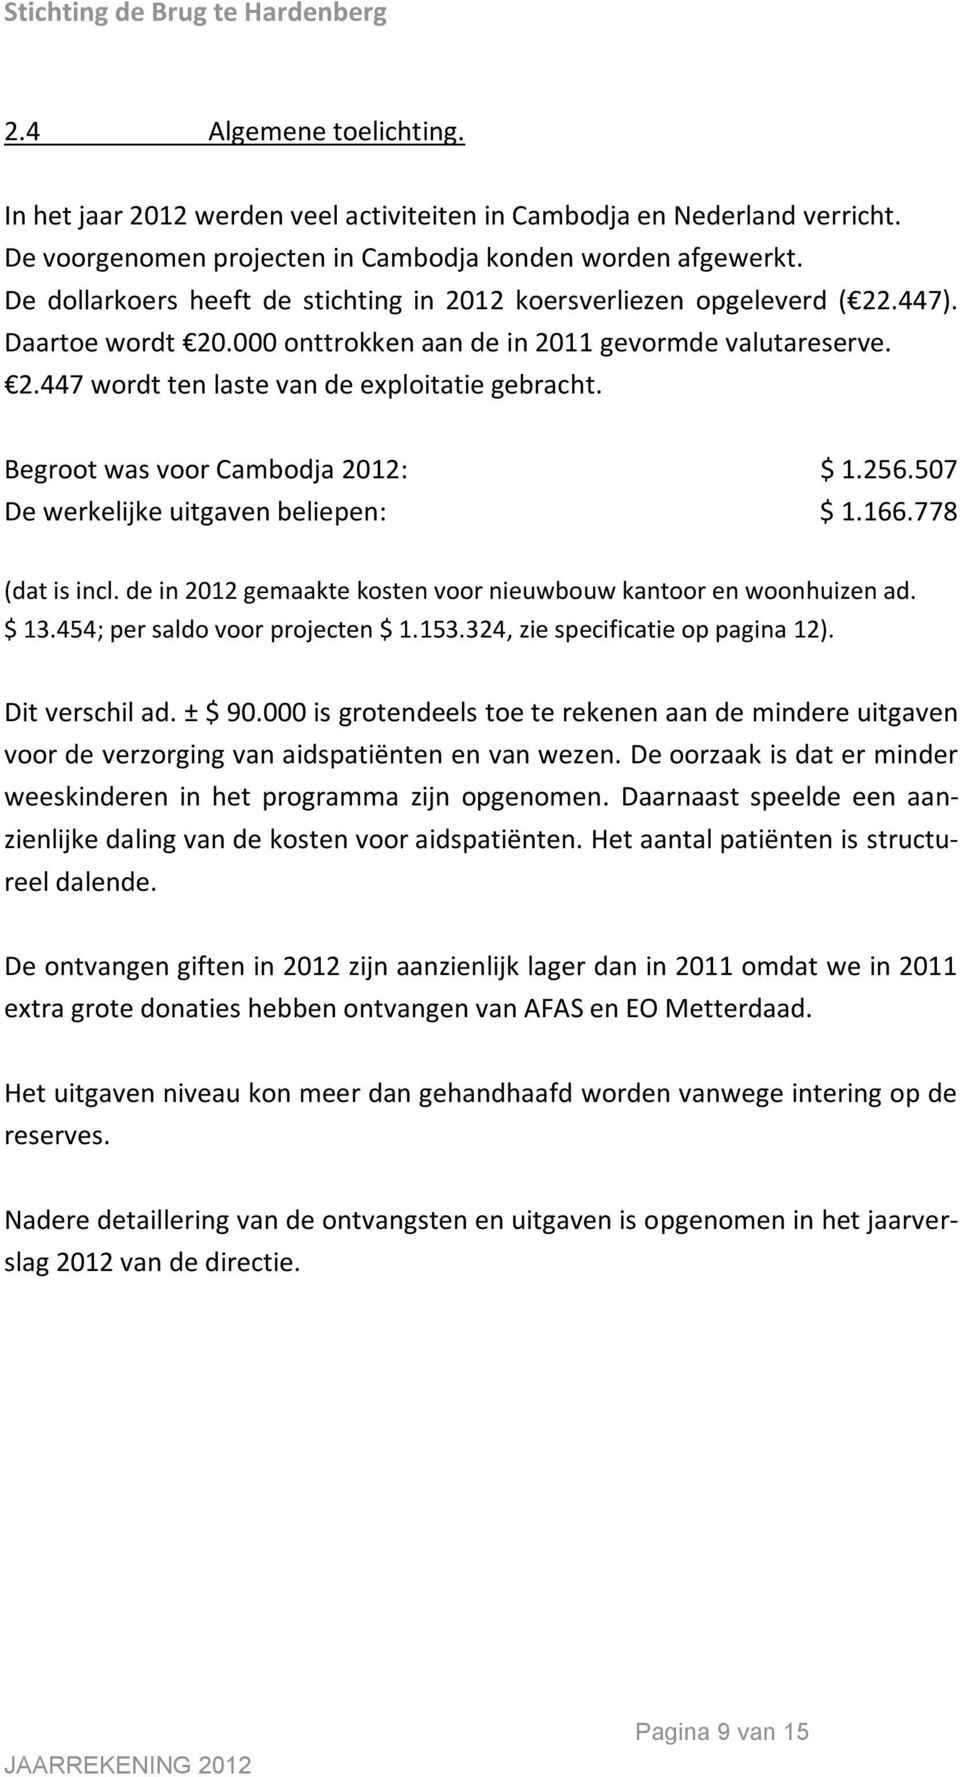 Begroot was voor Cambodja 2012: $ 1.256.507 De werkelijke uitgaven beliepen: $ 1.166.778 (dat is incl. de in 2012 gemaakte kosten voor nieuwbouw kantoor en woonhuizen ad. $ 13.